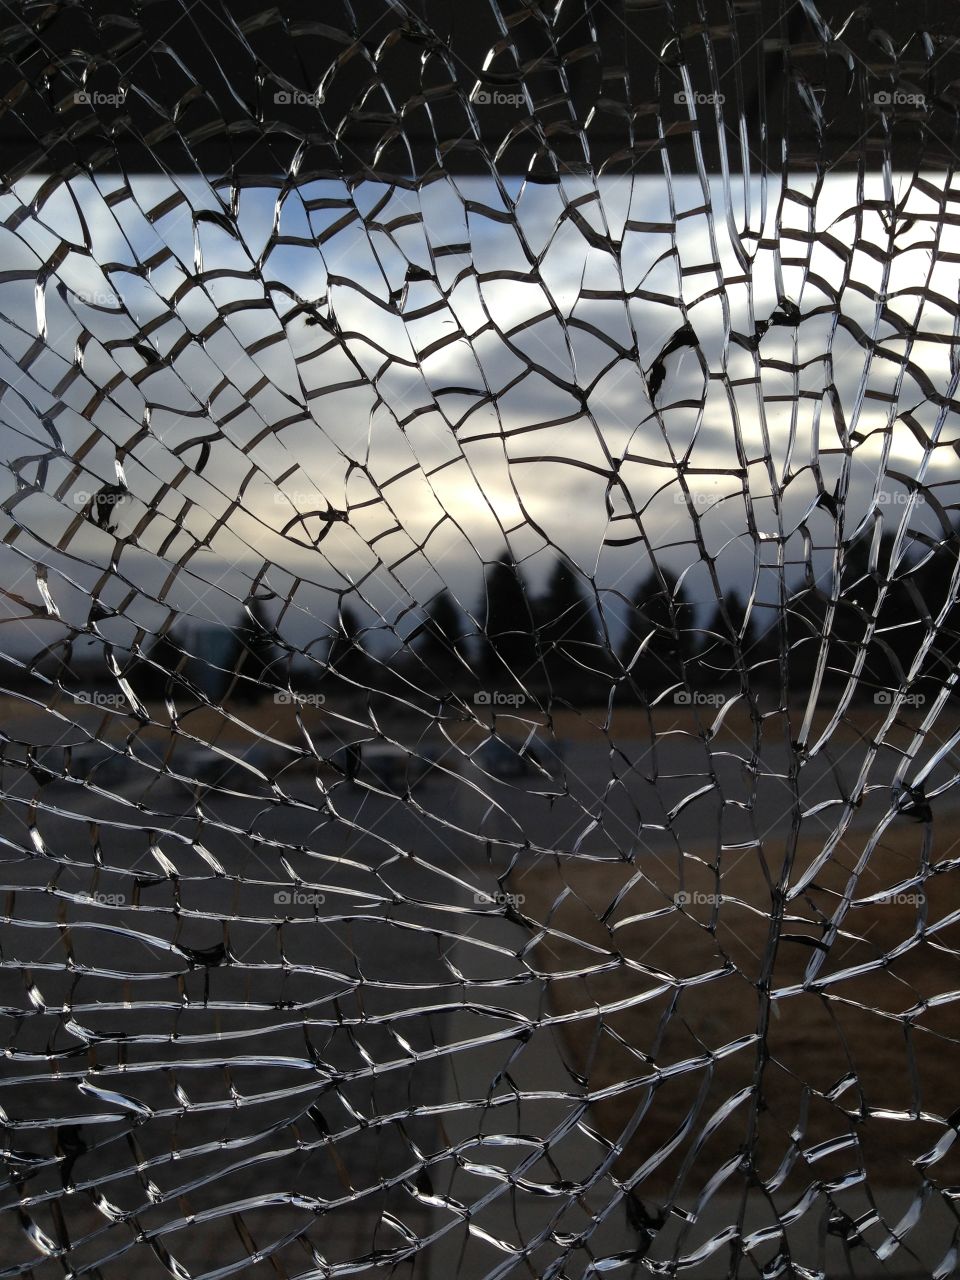 World through broken glass